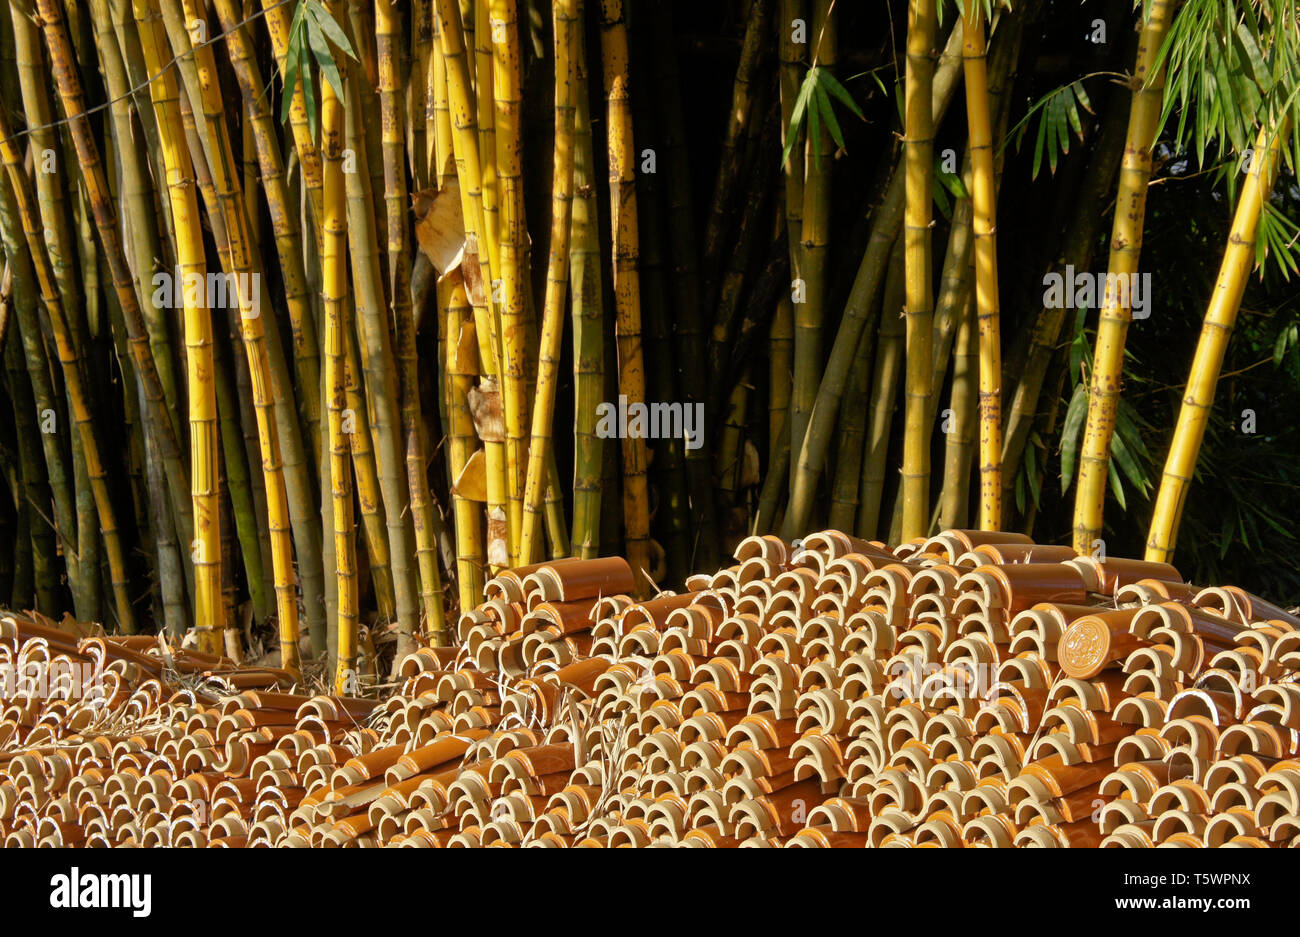 Keramische Dachziegel vor einem Stand von Bambus im Chinesischen Tempel gestapelt, Malaysia Stockfoto